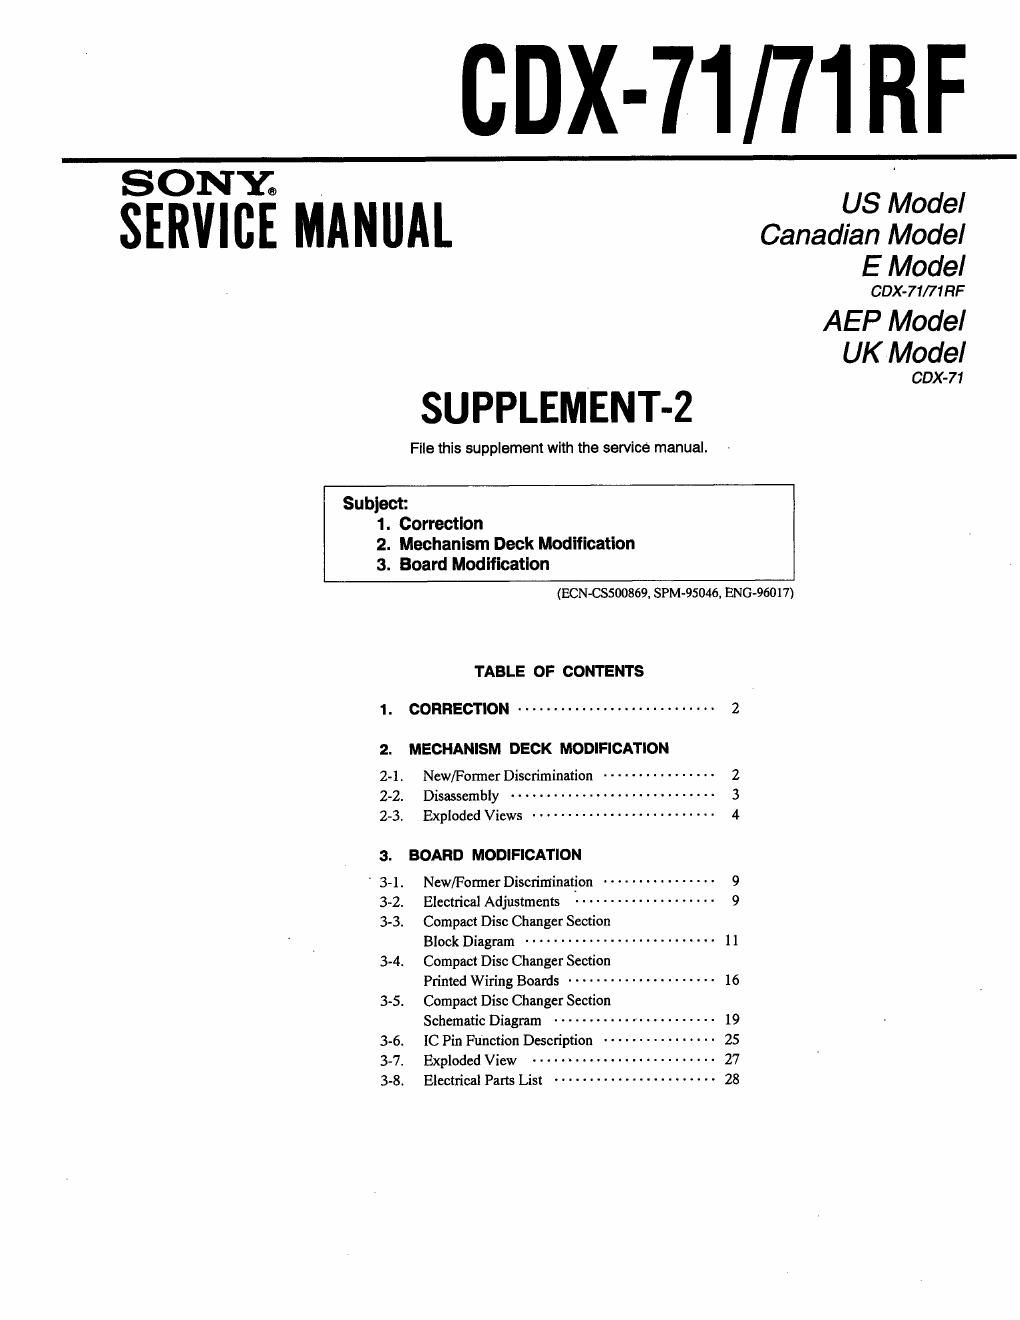 sony cdx 71 service manual